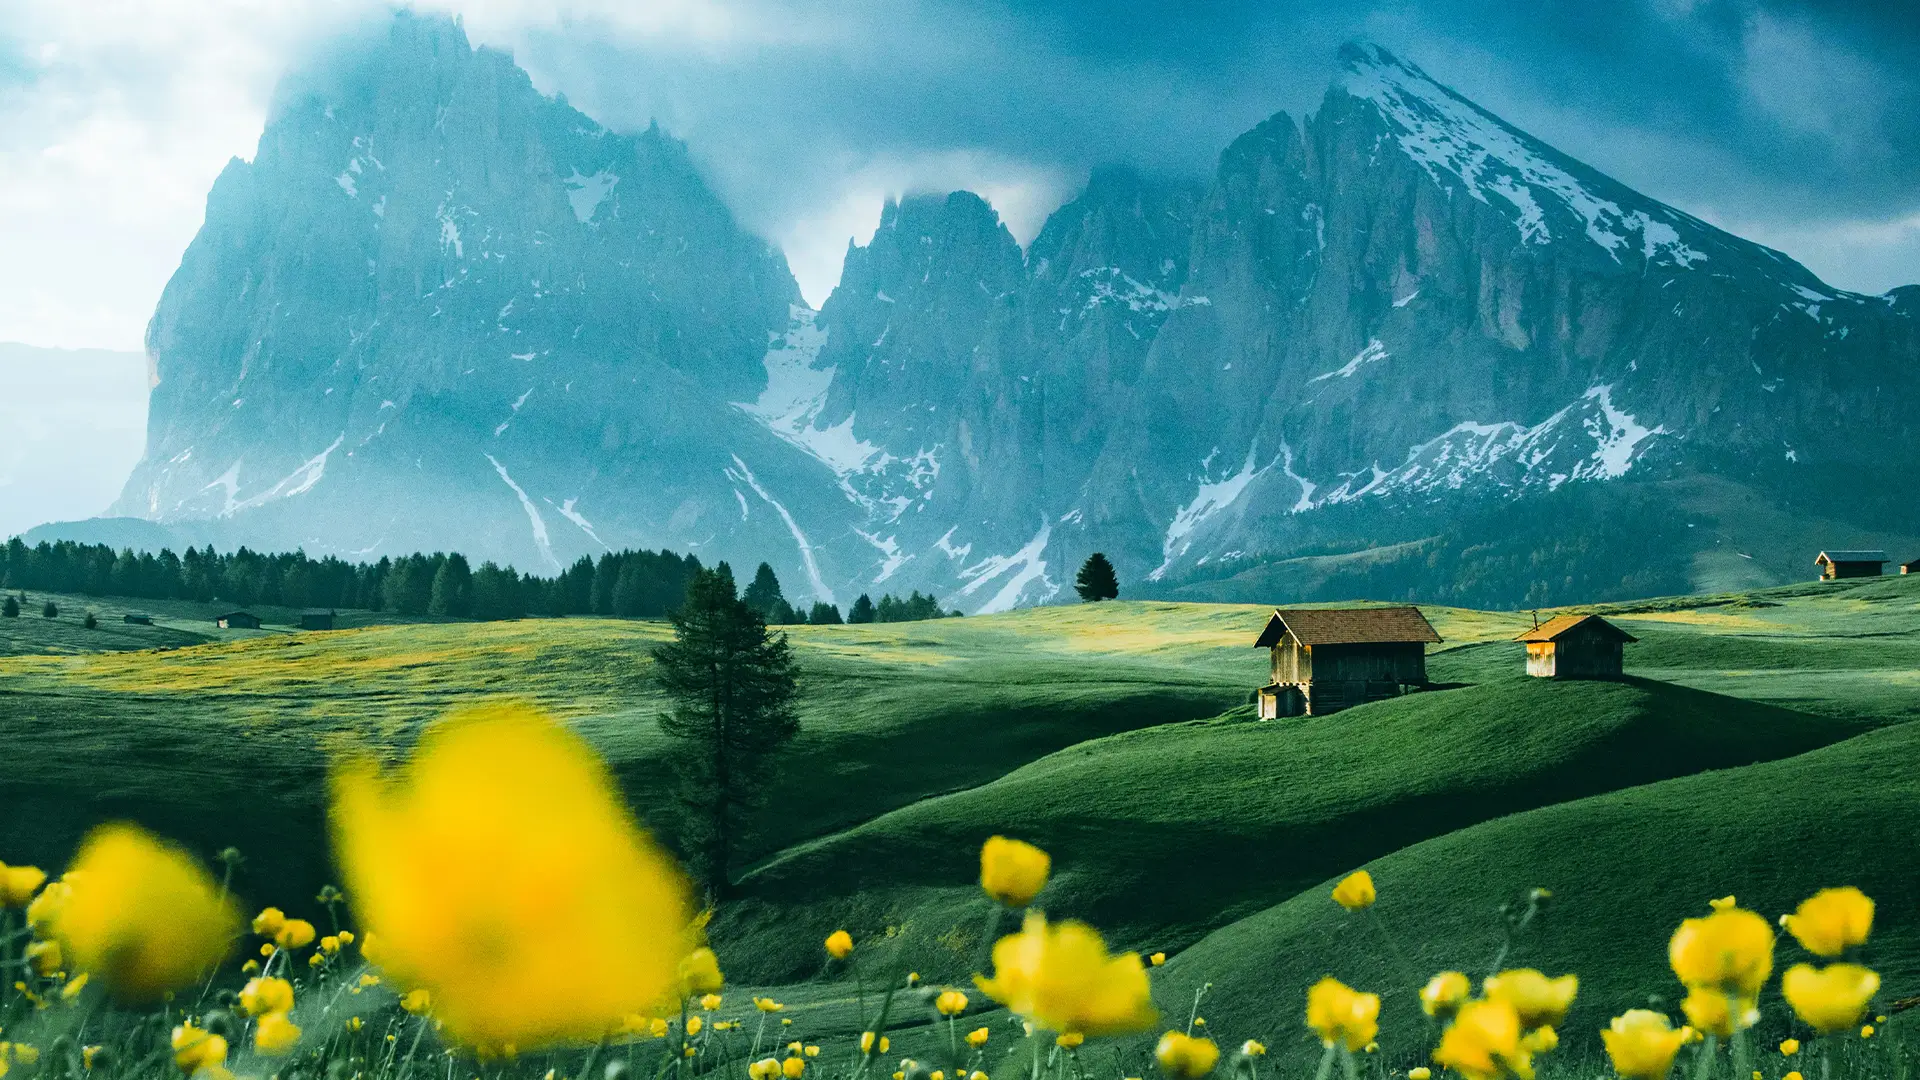 Yellow flower field near mountain under blue sky